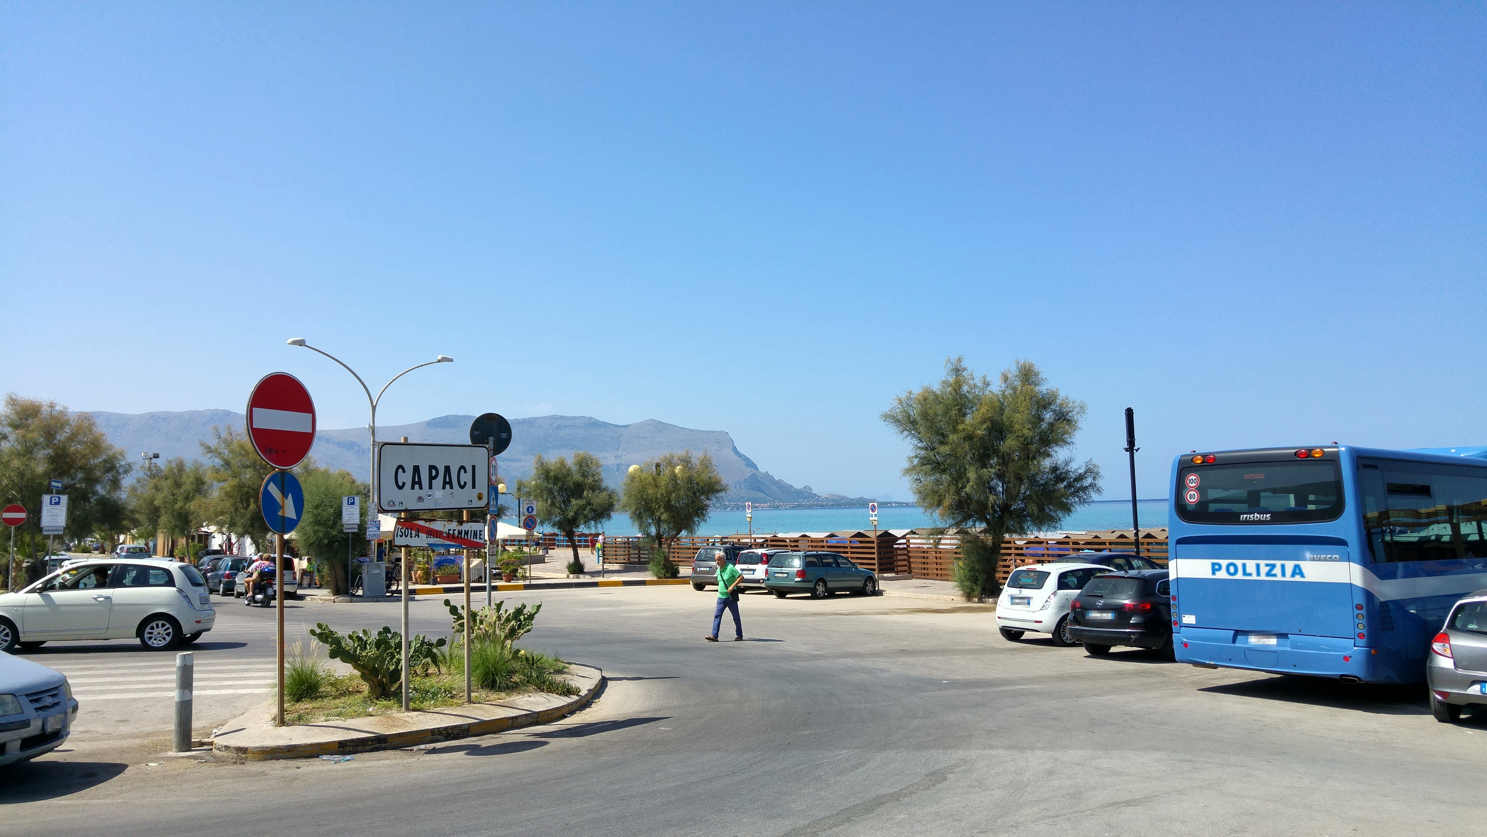 el lindero entre los municipios de Isola della Femmine y Capaci